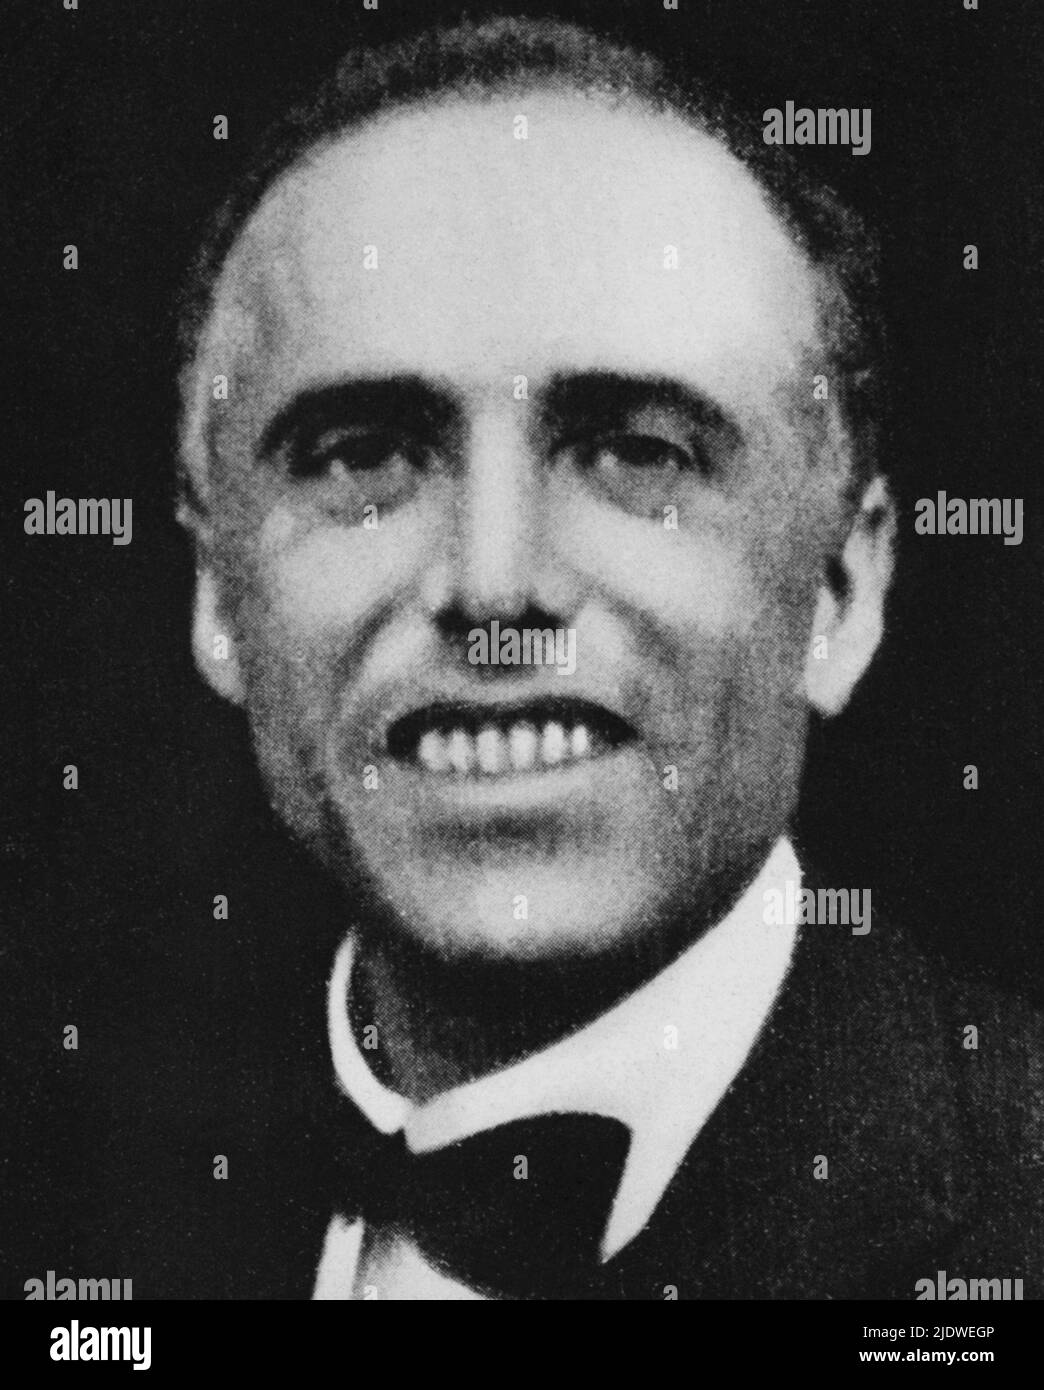 juin 1924 , Roma , ITALIE : le socialiste italien GIACOMO MATTEOTTI ( 1885 - 1924 ) dans une photo prise quelques jours avant son assassinat par les fascistes lors de l'enlèvement de la journée du 10 juin 1924 . - SOCIALISMO - SOCIALISTA - SOCIALISME - POLITHO - portrait - ritratto - FASCISMO - vittima del nazi-fascismo - RAPITO - RAPIMENTO - fascinismo - fascisme - Segretario Generale del Partito Socialista - PSI - papillo tie - cravatta --- Archivio GBB Banque D'Images